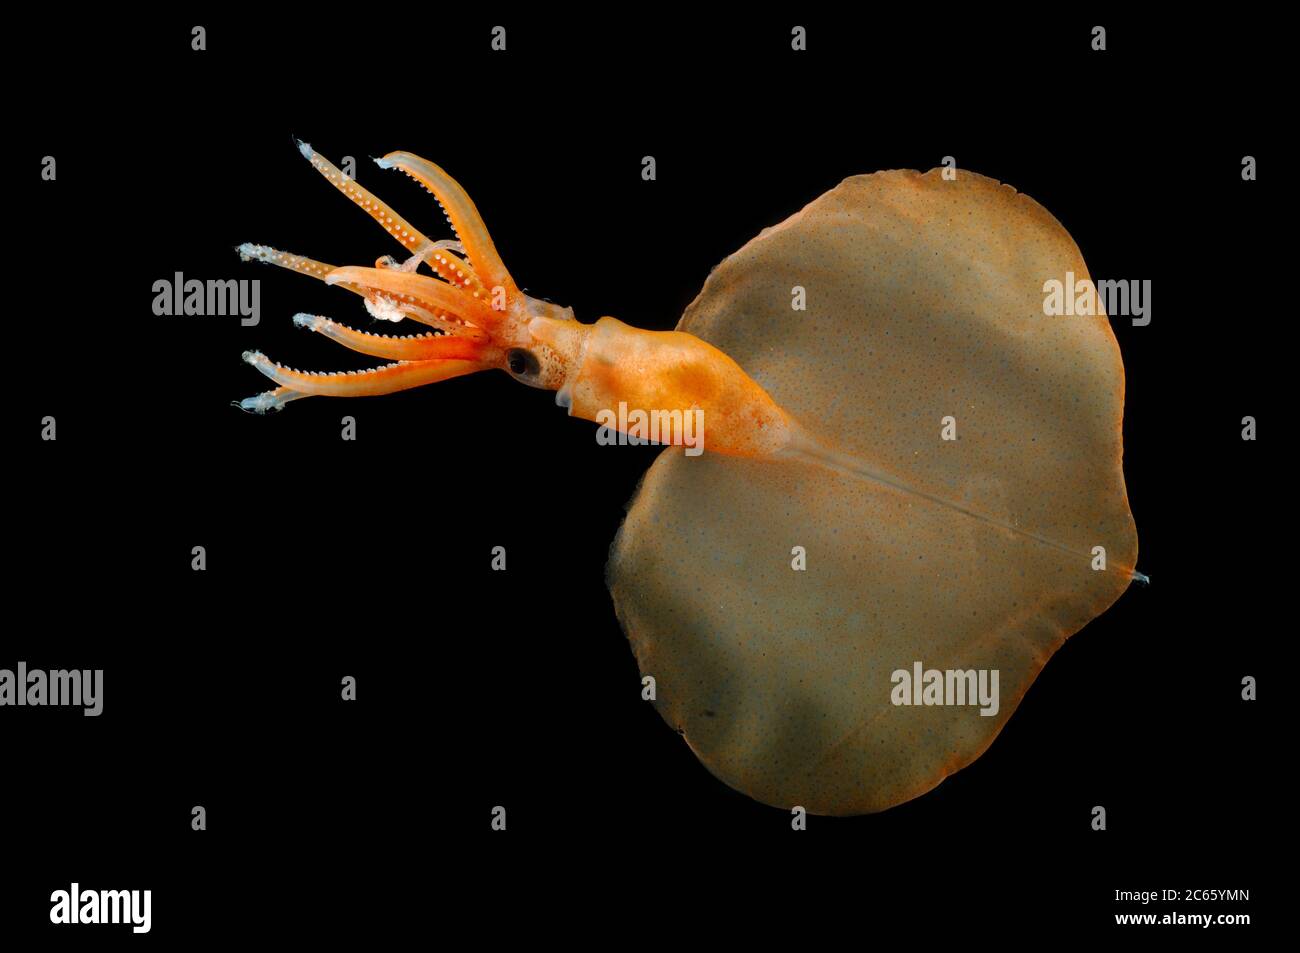 Magnapinna atlantica, anciennement appelé 'Magnapinna sp. A', est une espèce de calmar bigeeux connue de seulement deux spécimens prélevés dans le nord de l'océan Atlantique. Il se caractérise par plusieurs caractéristiques morphologiques uniques : les bases du tentacule sont plus étroites que les bases adjacentes du bras, le tentacule proximal manque de suceurs mais possède des structures glandulaires, et le pigment de l'animal est contenu principalement dans des chromatophores fonctionnelles. Banque D'Images